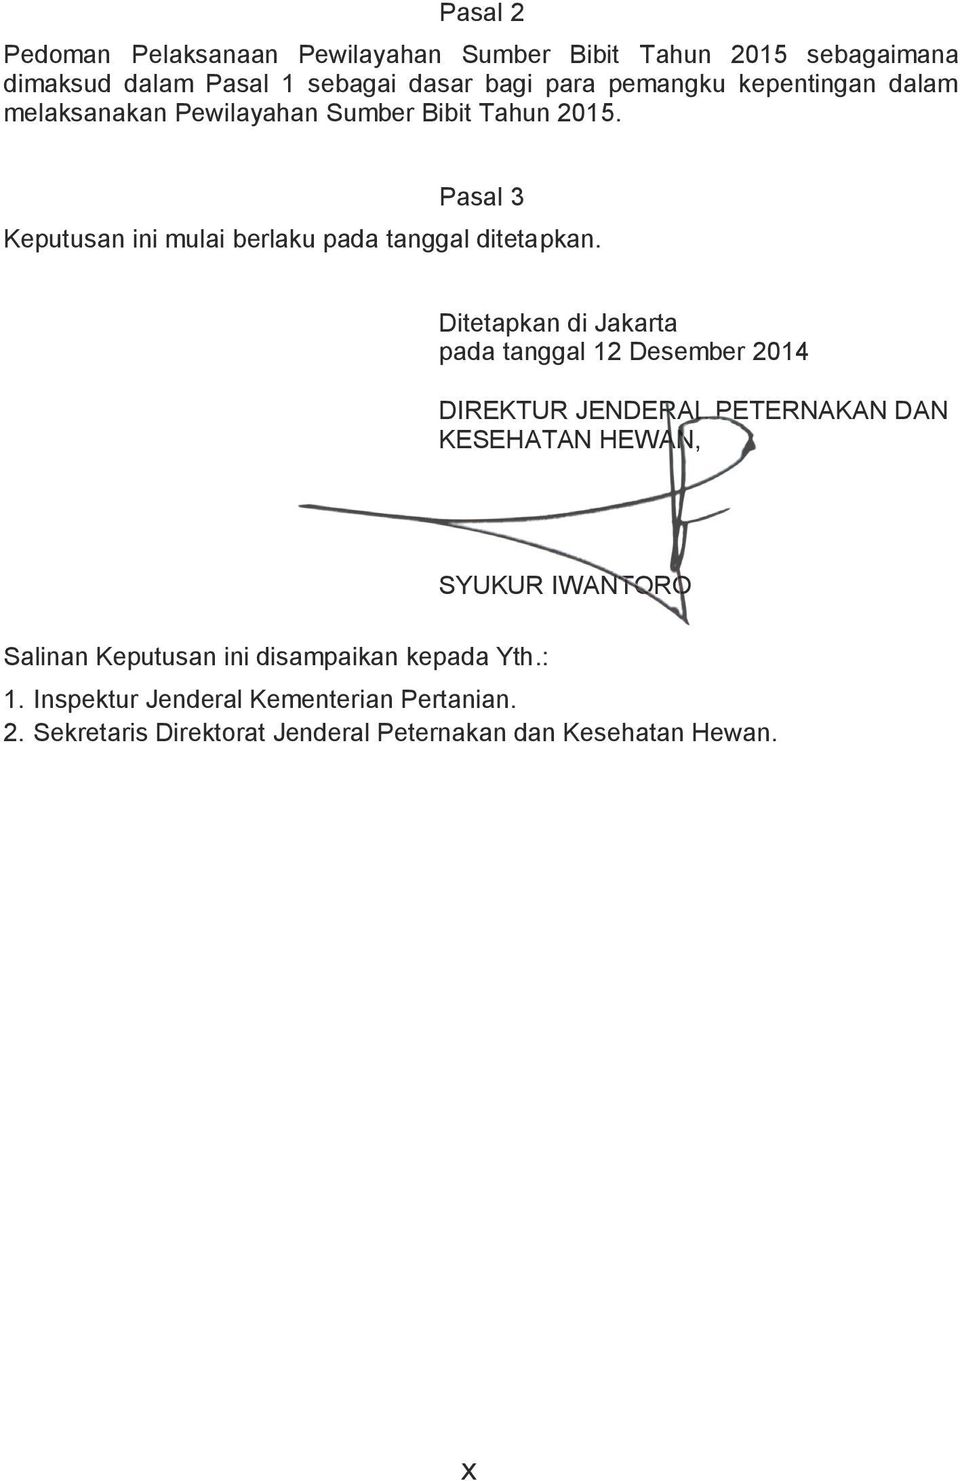 Ditetapkan di Jakarta pada tanggal 12 Desember 2014 DIREKTUR JENDERAL PETERNAKAN DAN KESEHATAN HEWAN, SYUKUR IWANTORO Salinan Keputusan